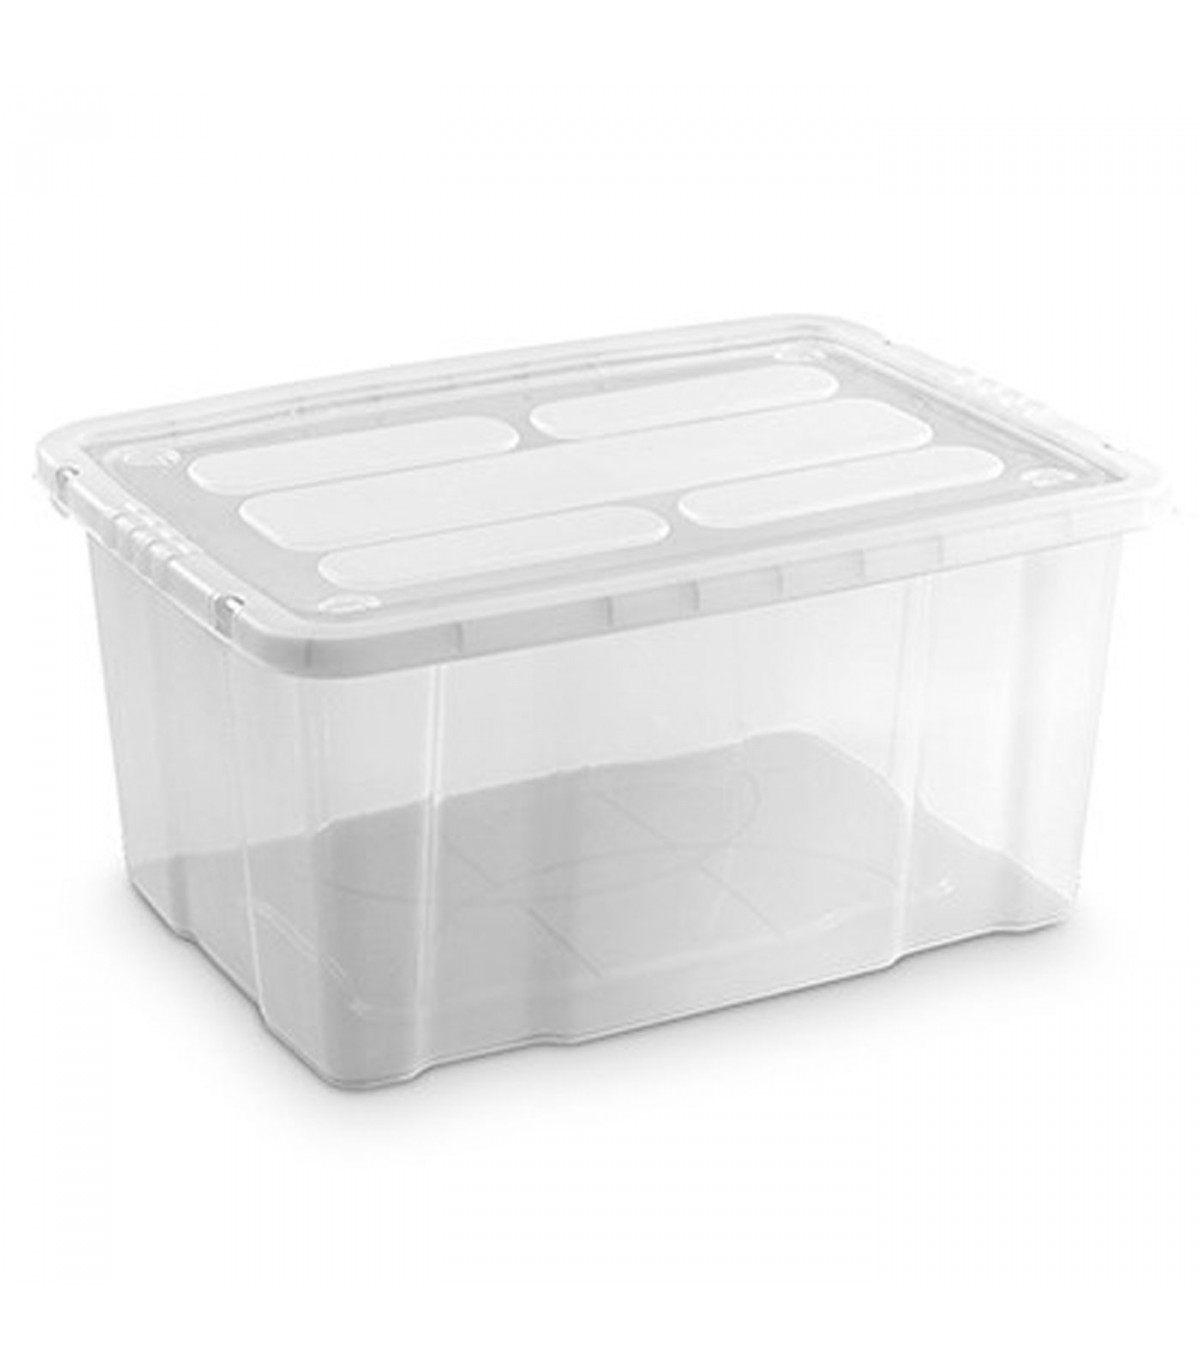  Zerdyne Caja de plástico transparente con tapa, 10 L : Todo lo  demás